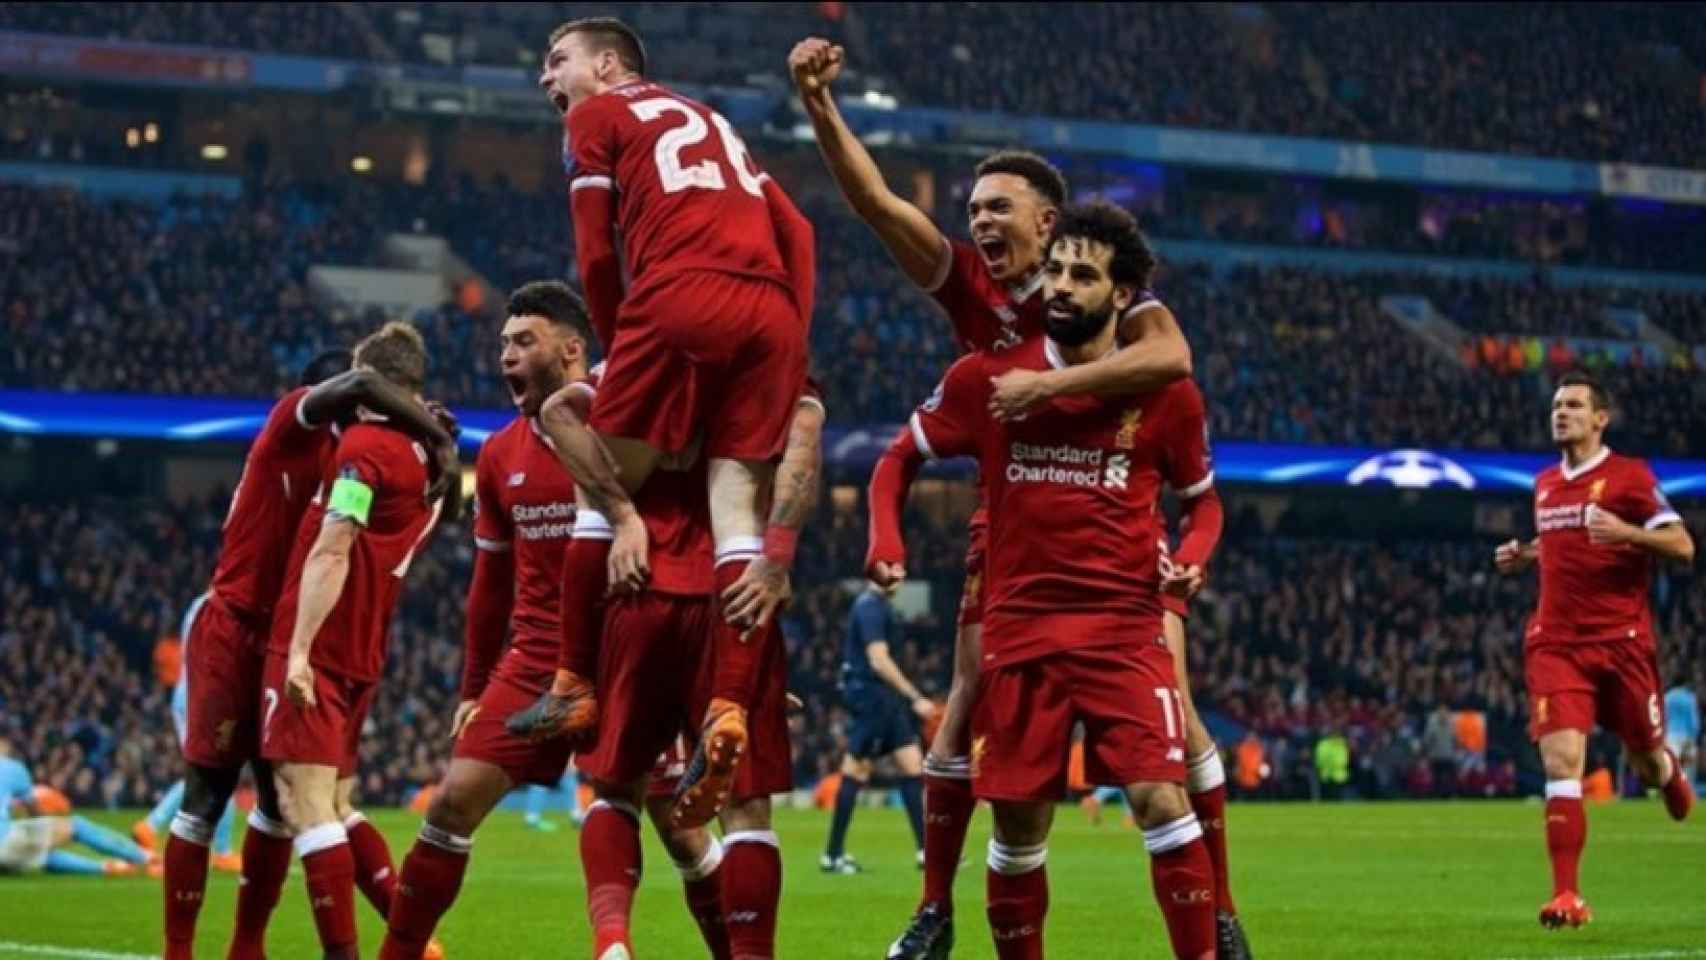 Celebración del Liverpool en el partido contra el City. Foto: liverpoolfc.com